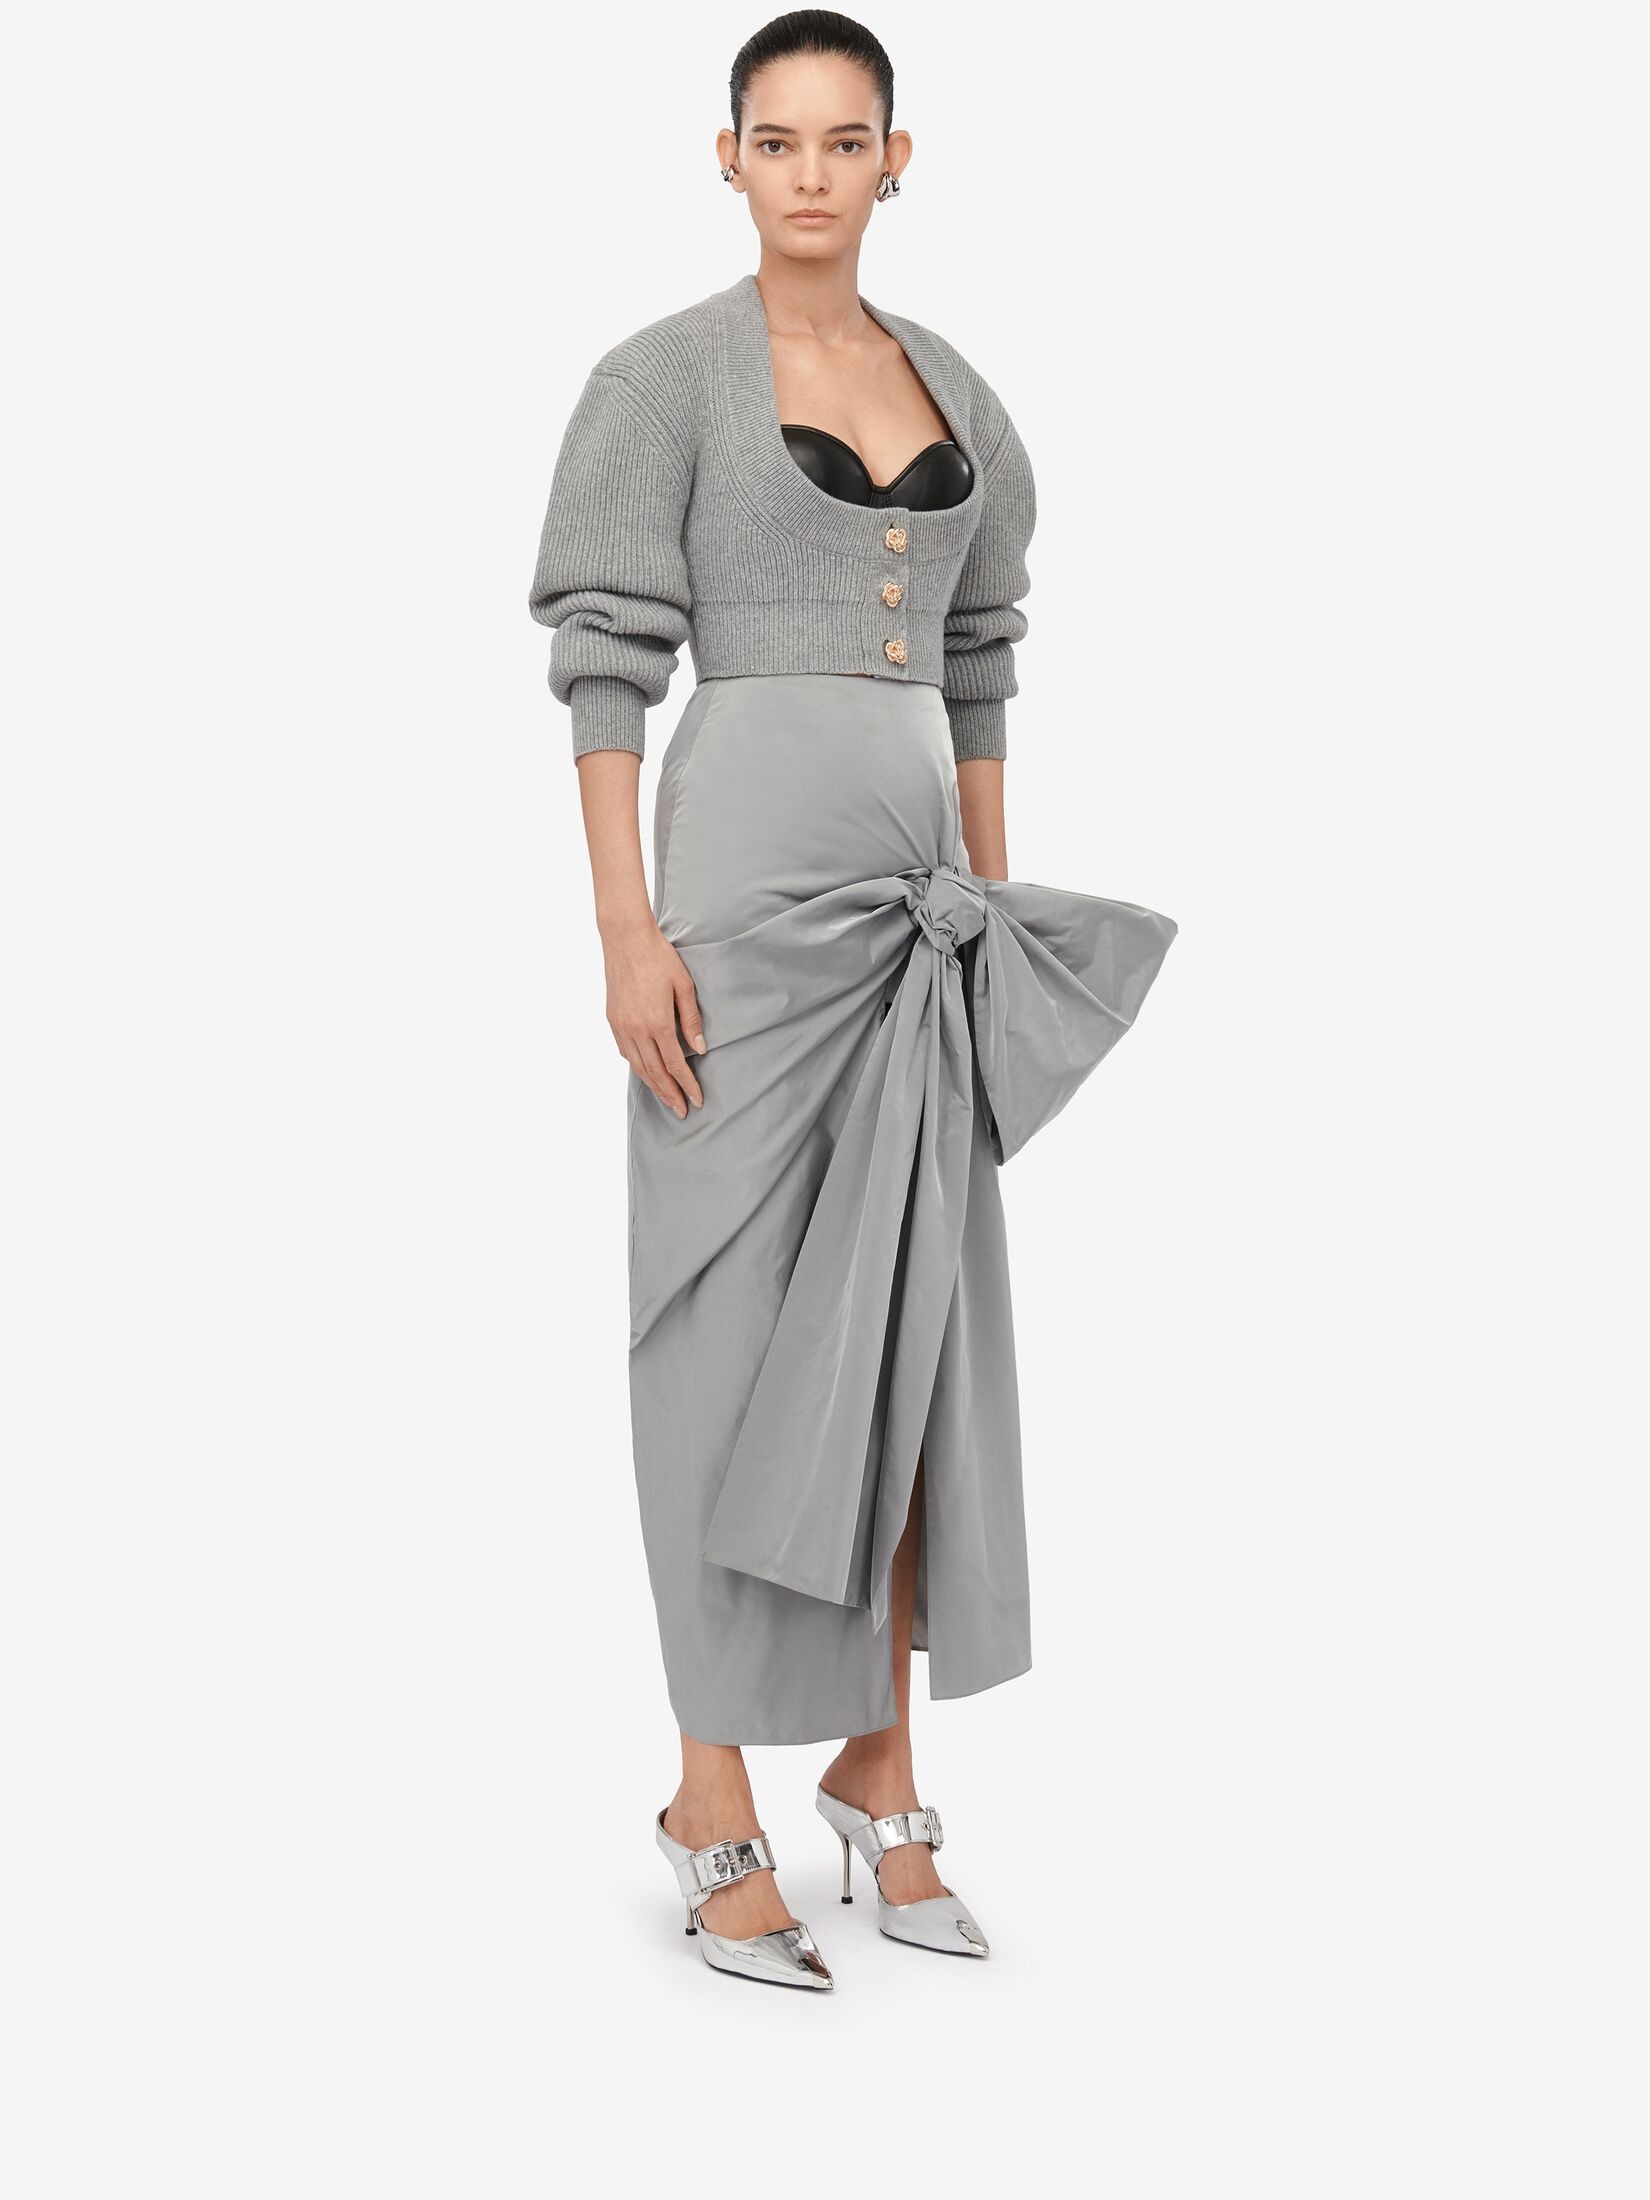 Women's Bow Detail Slim Skirt in Silver - 3